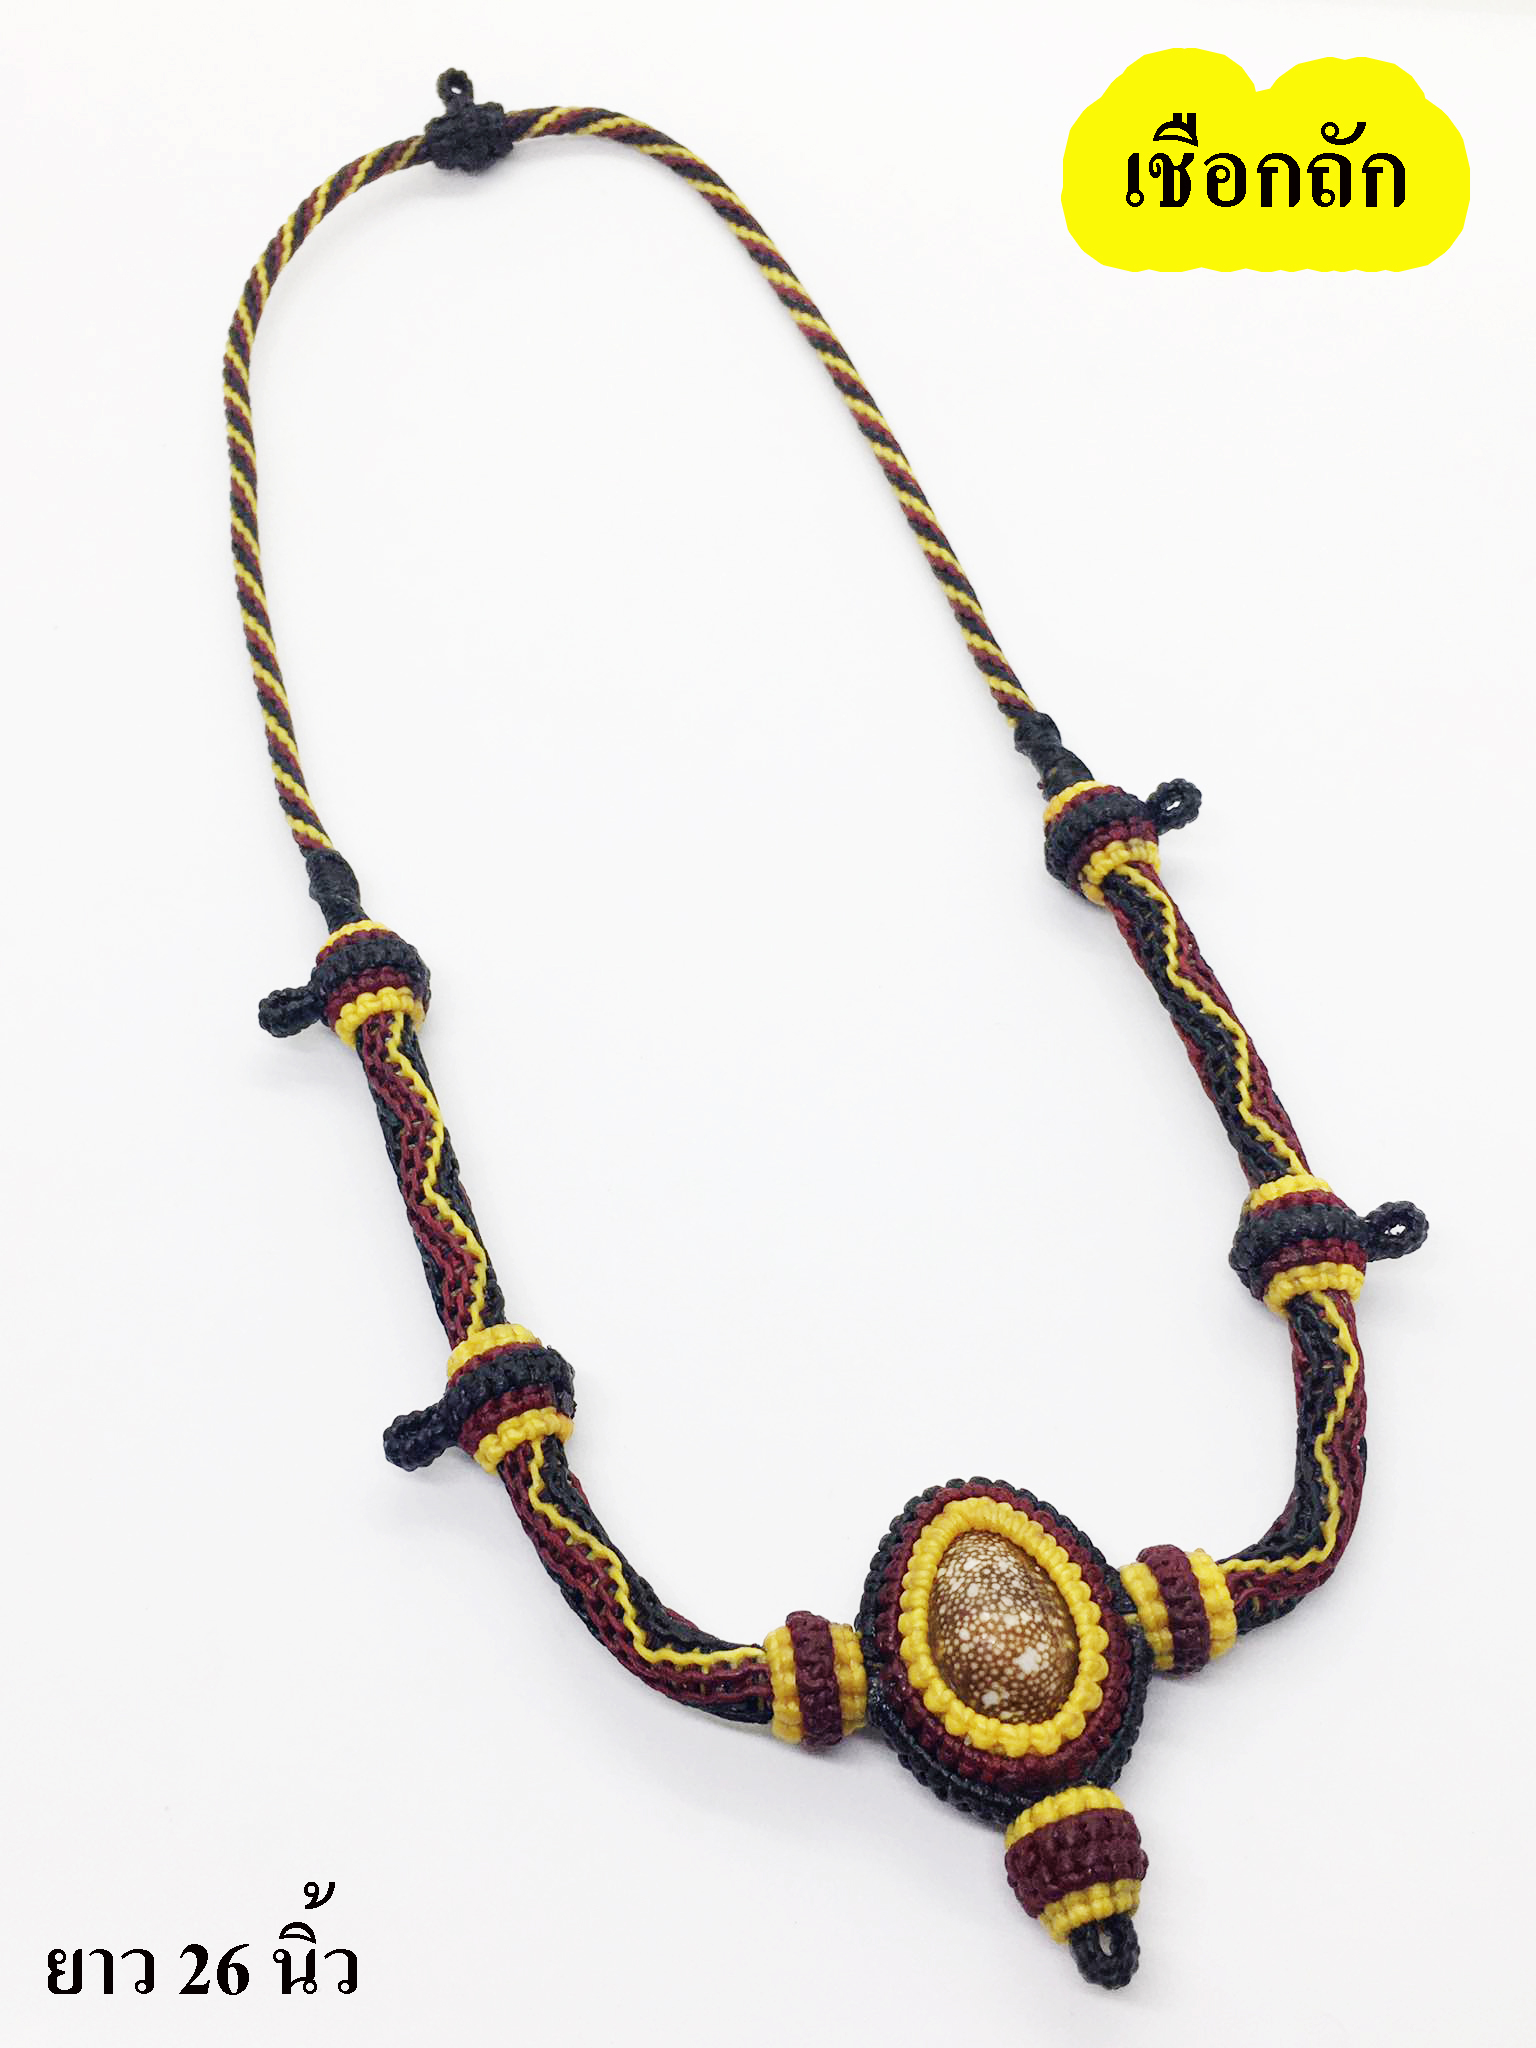 สร้อยคอ เชือกเทียนถักมือ สี แดง ดำ เหลืองล้อมเบี้ยแก้ 5 ห่วงห้อยหลัง ยาว 26 นิ้ว /Red, black and yellow hand-woven wax rope necklace, 5 rings hanging back, 26 inches long